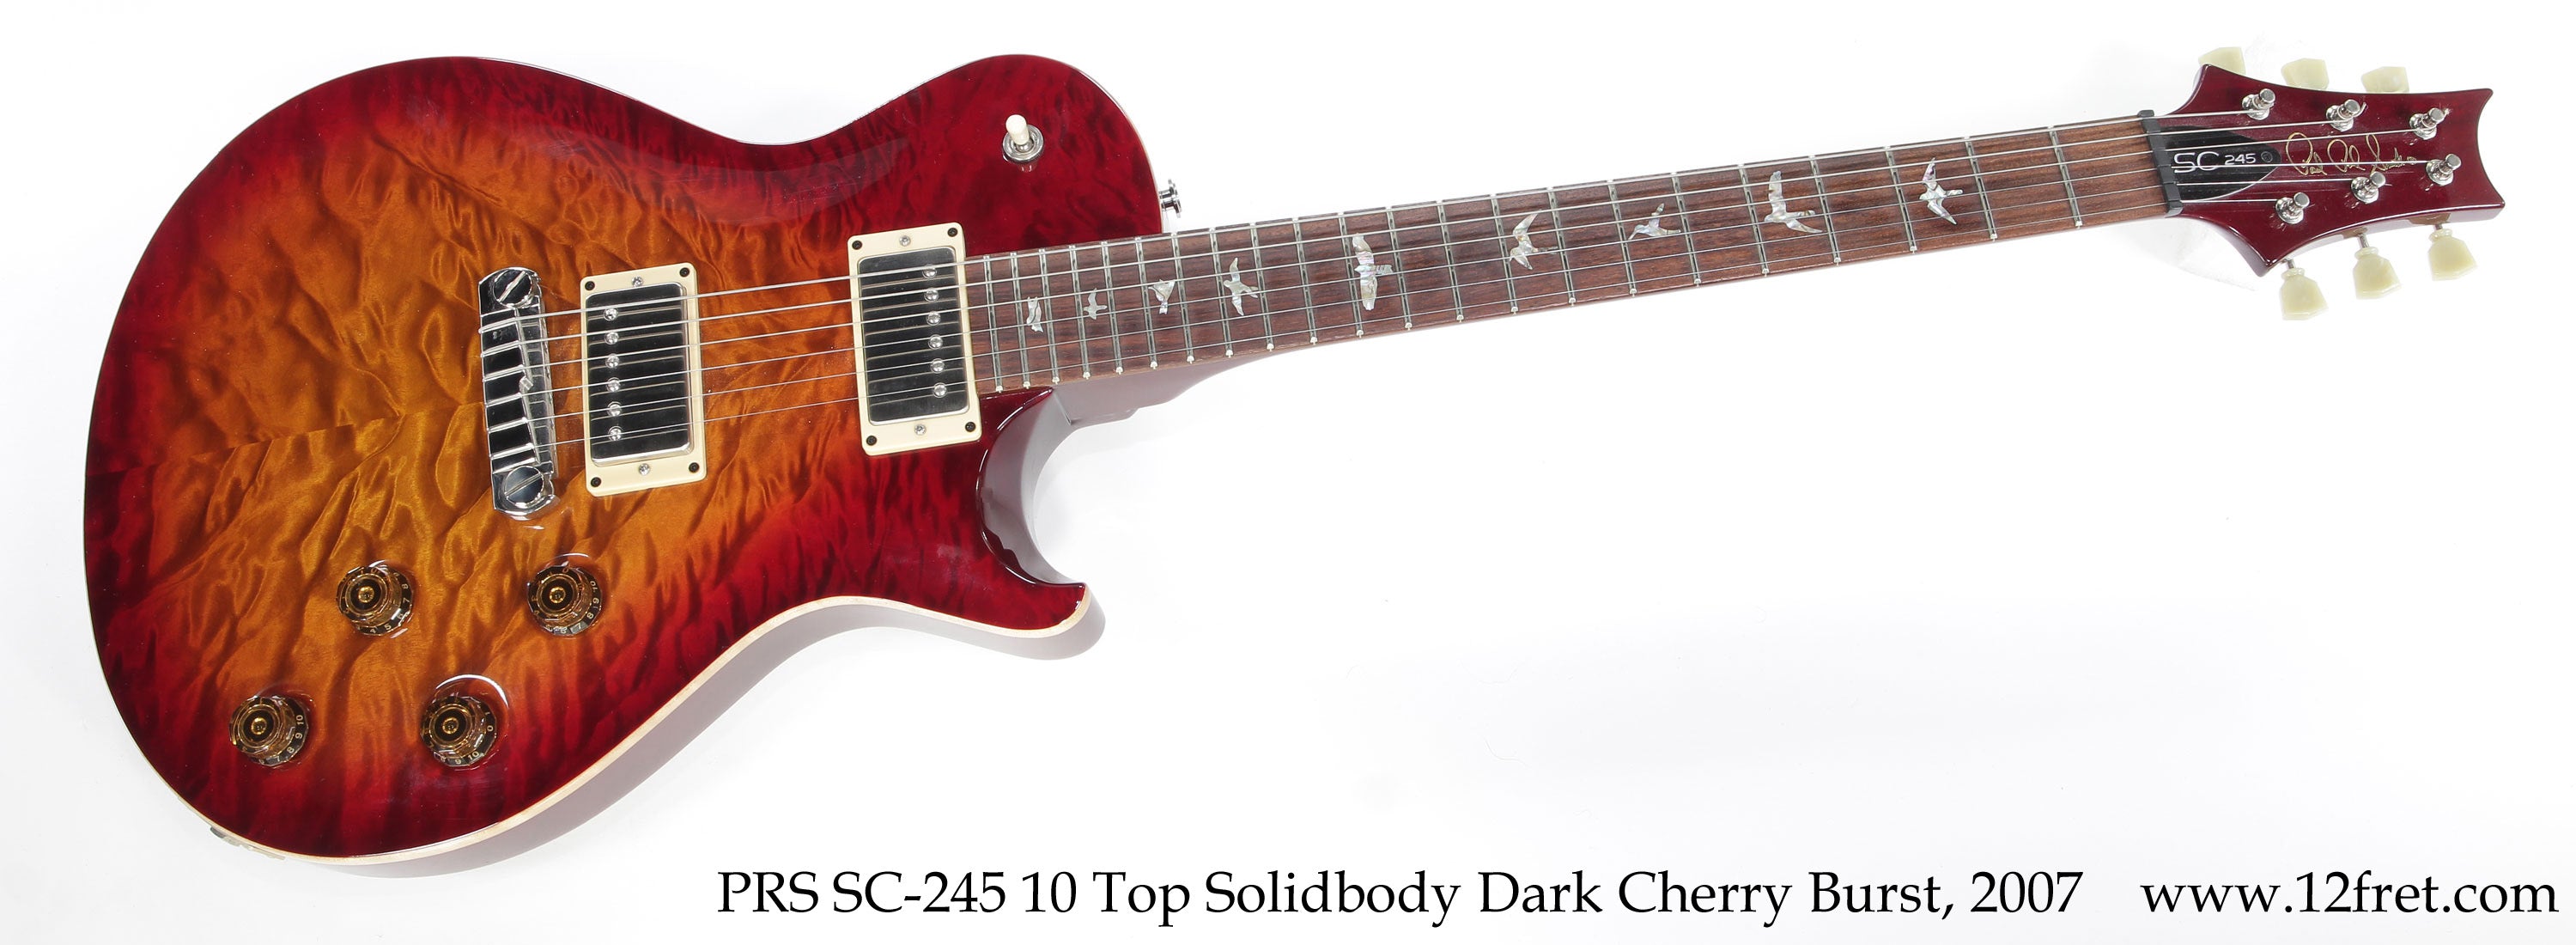 PRS SC-245 10 Top Solidbody Dark Cherry Burst, 2007